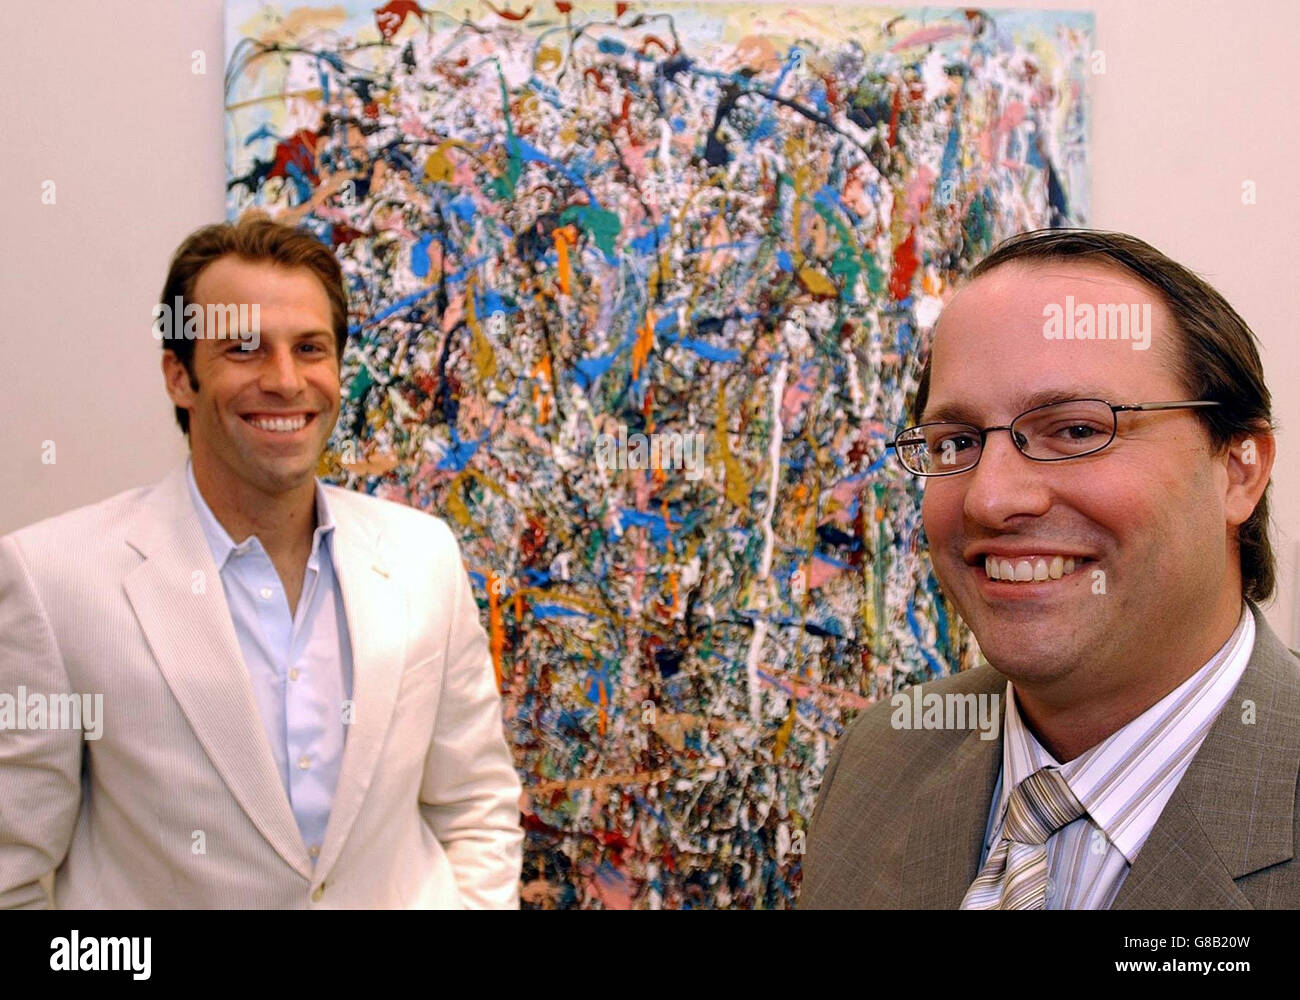 Il tennista Greg Rusedski (a sinistra) e il fratello dell'artista Will Rusedski stanno di fronte a uno dei dipinti di Will intitolato "Fete" alla fiera artistica di Londra. Foto Stock